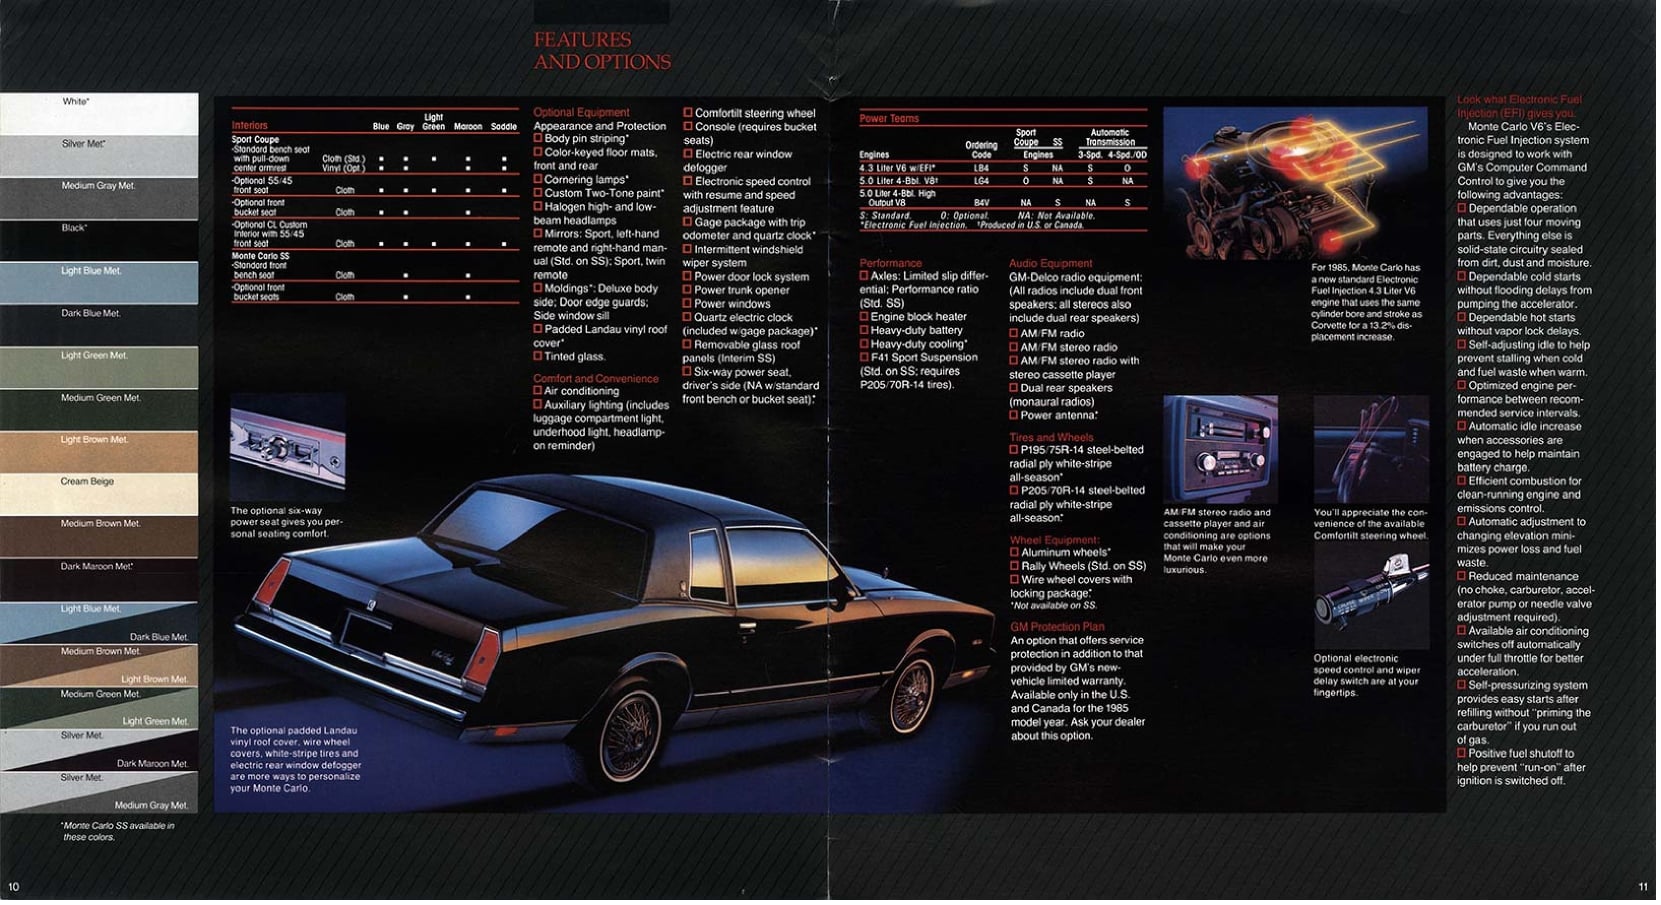 1985 Chevrolet Monte Carlo Brochure 10-11